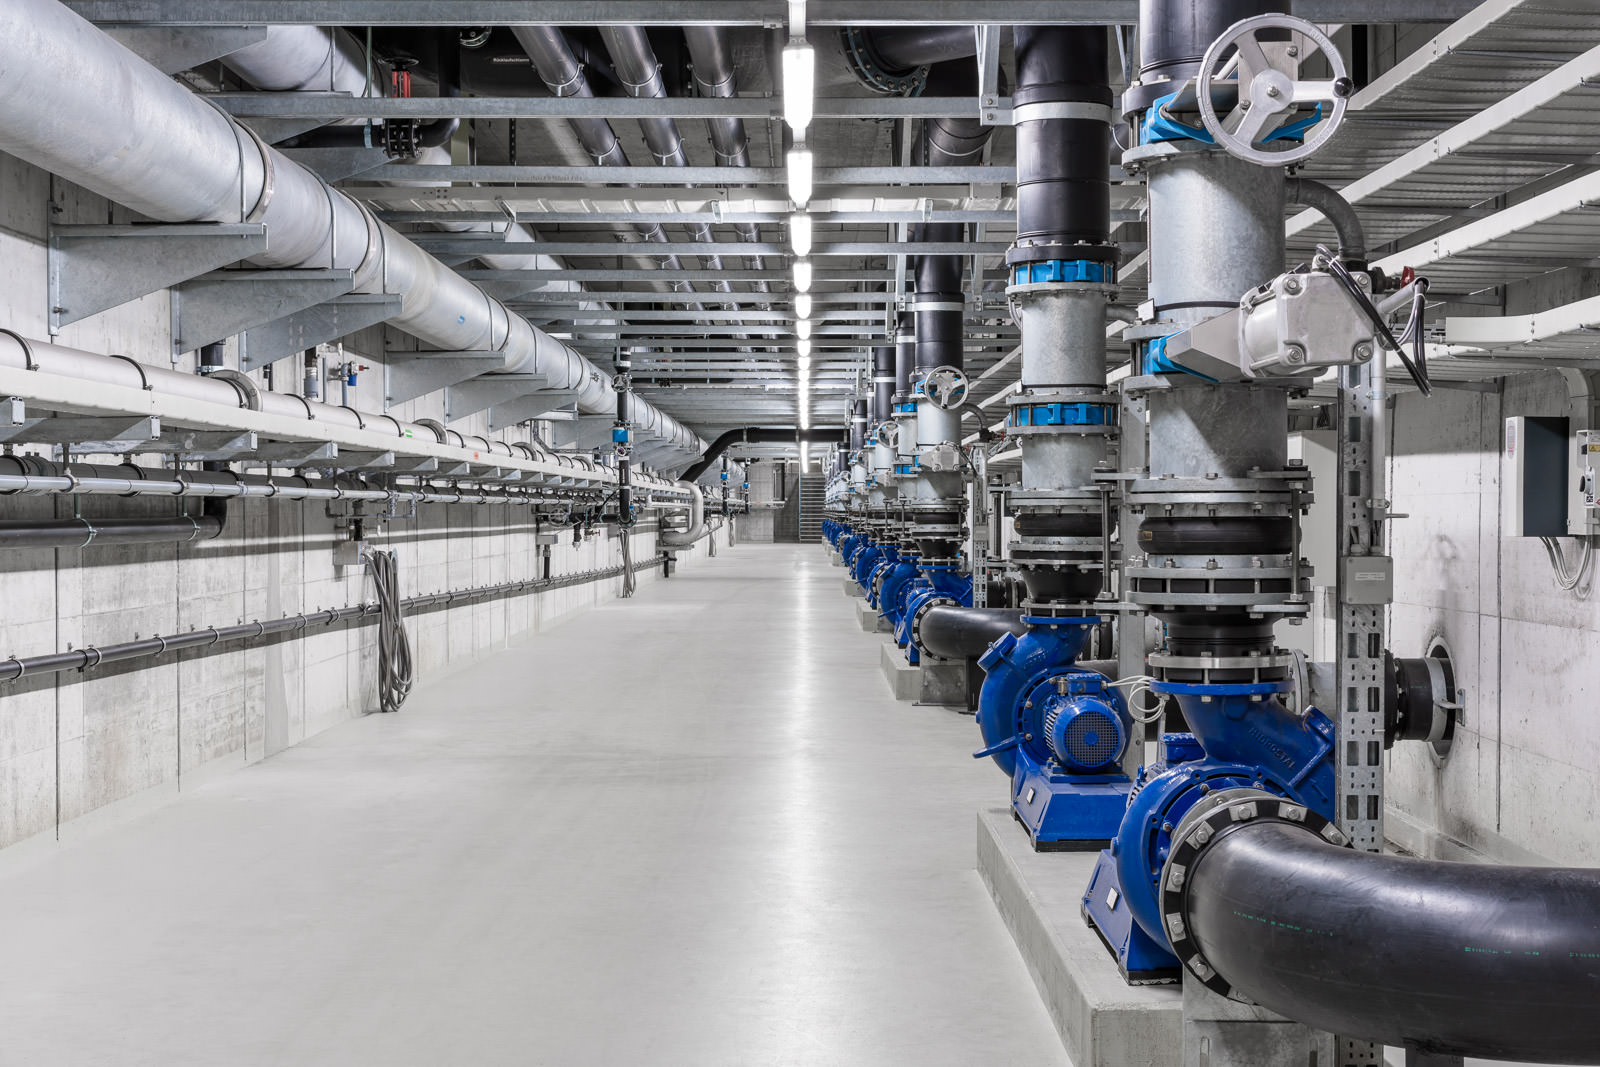 Underground production and service plant - photographer Zurich Lucerne Switzerland